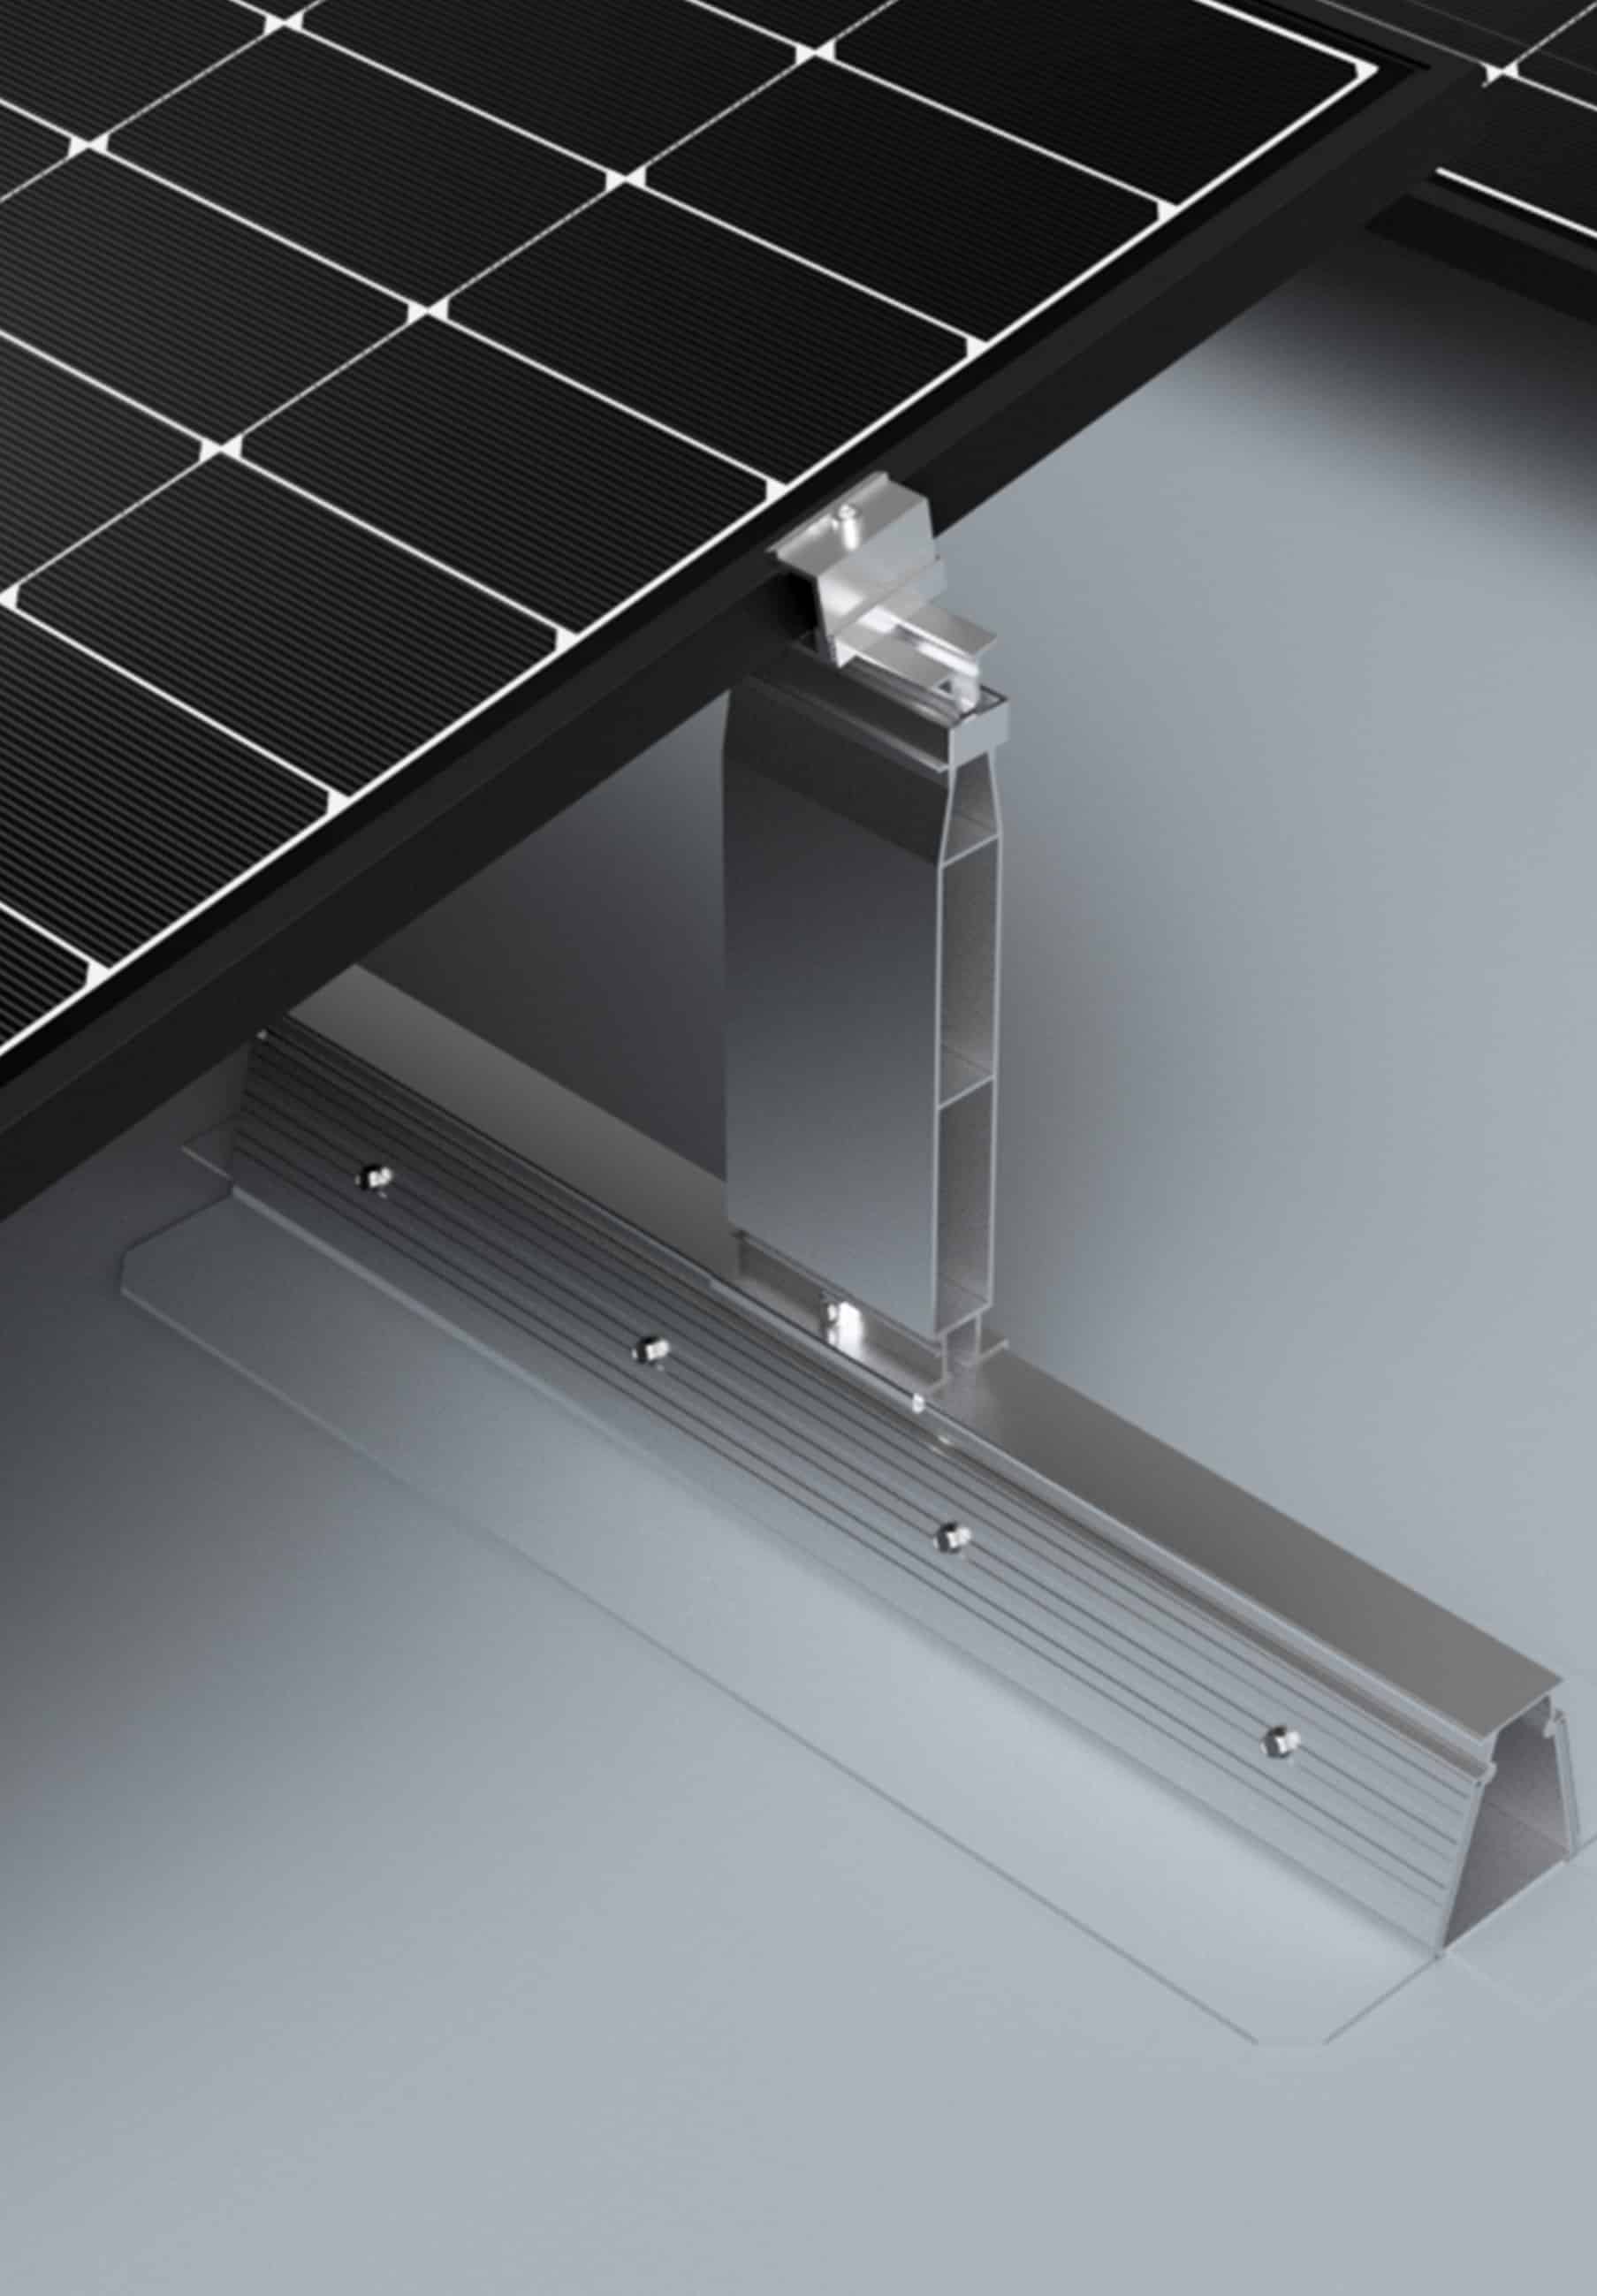 Fixation-panneaux-photovoltaiques-ROOF-solarpvc-incline